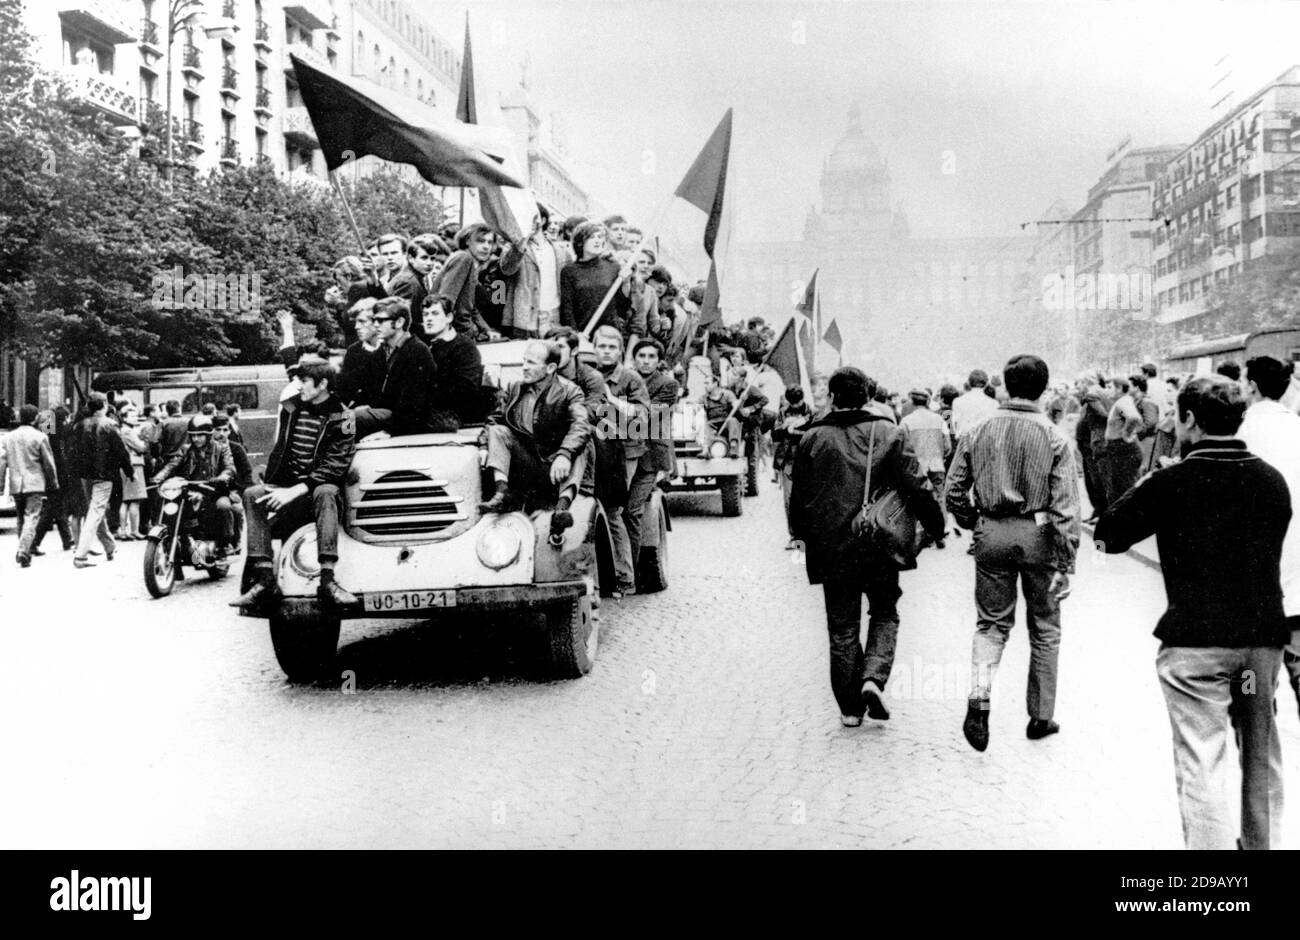 Jóvenes checoslovacos durante una manifestación en la Plaza Wenceslas, Praga (Checoslovaquia), agosto de 1968. --- Giovani cecoslovacchi durante una manifestazione en piazza San Venceslao, Praga (Cecoslovacchia), agosto 1968. Foto de stock